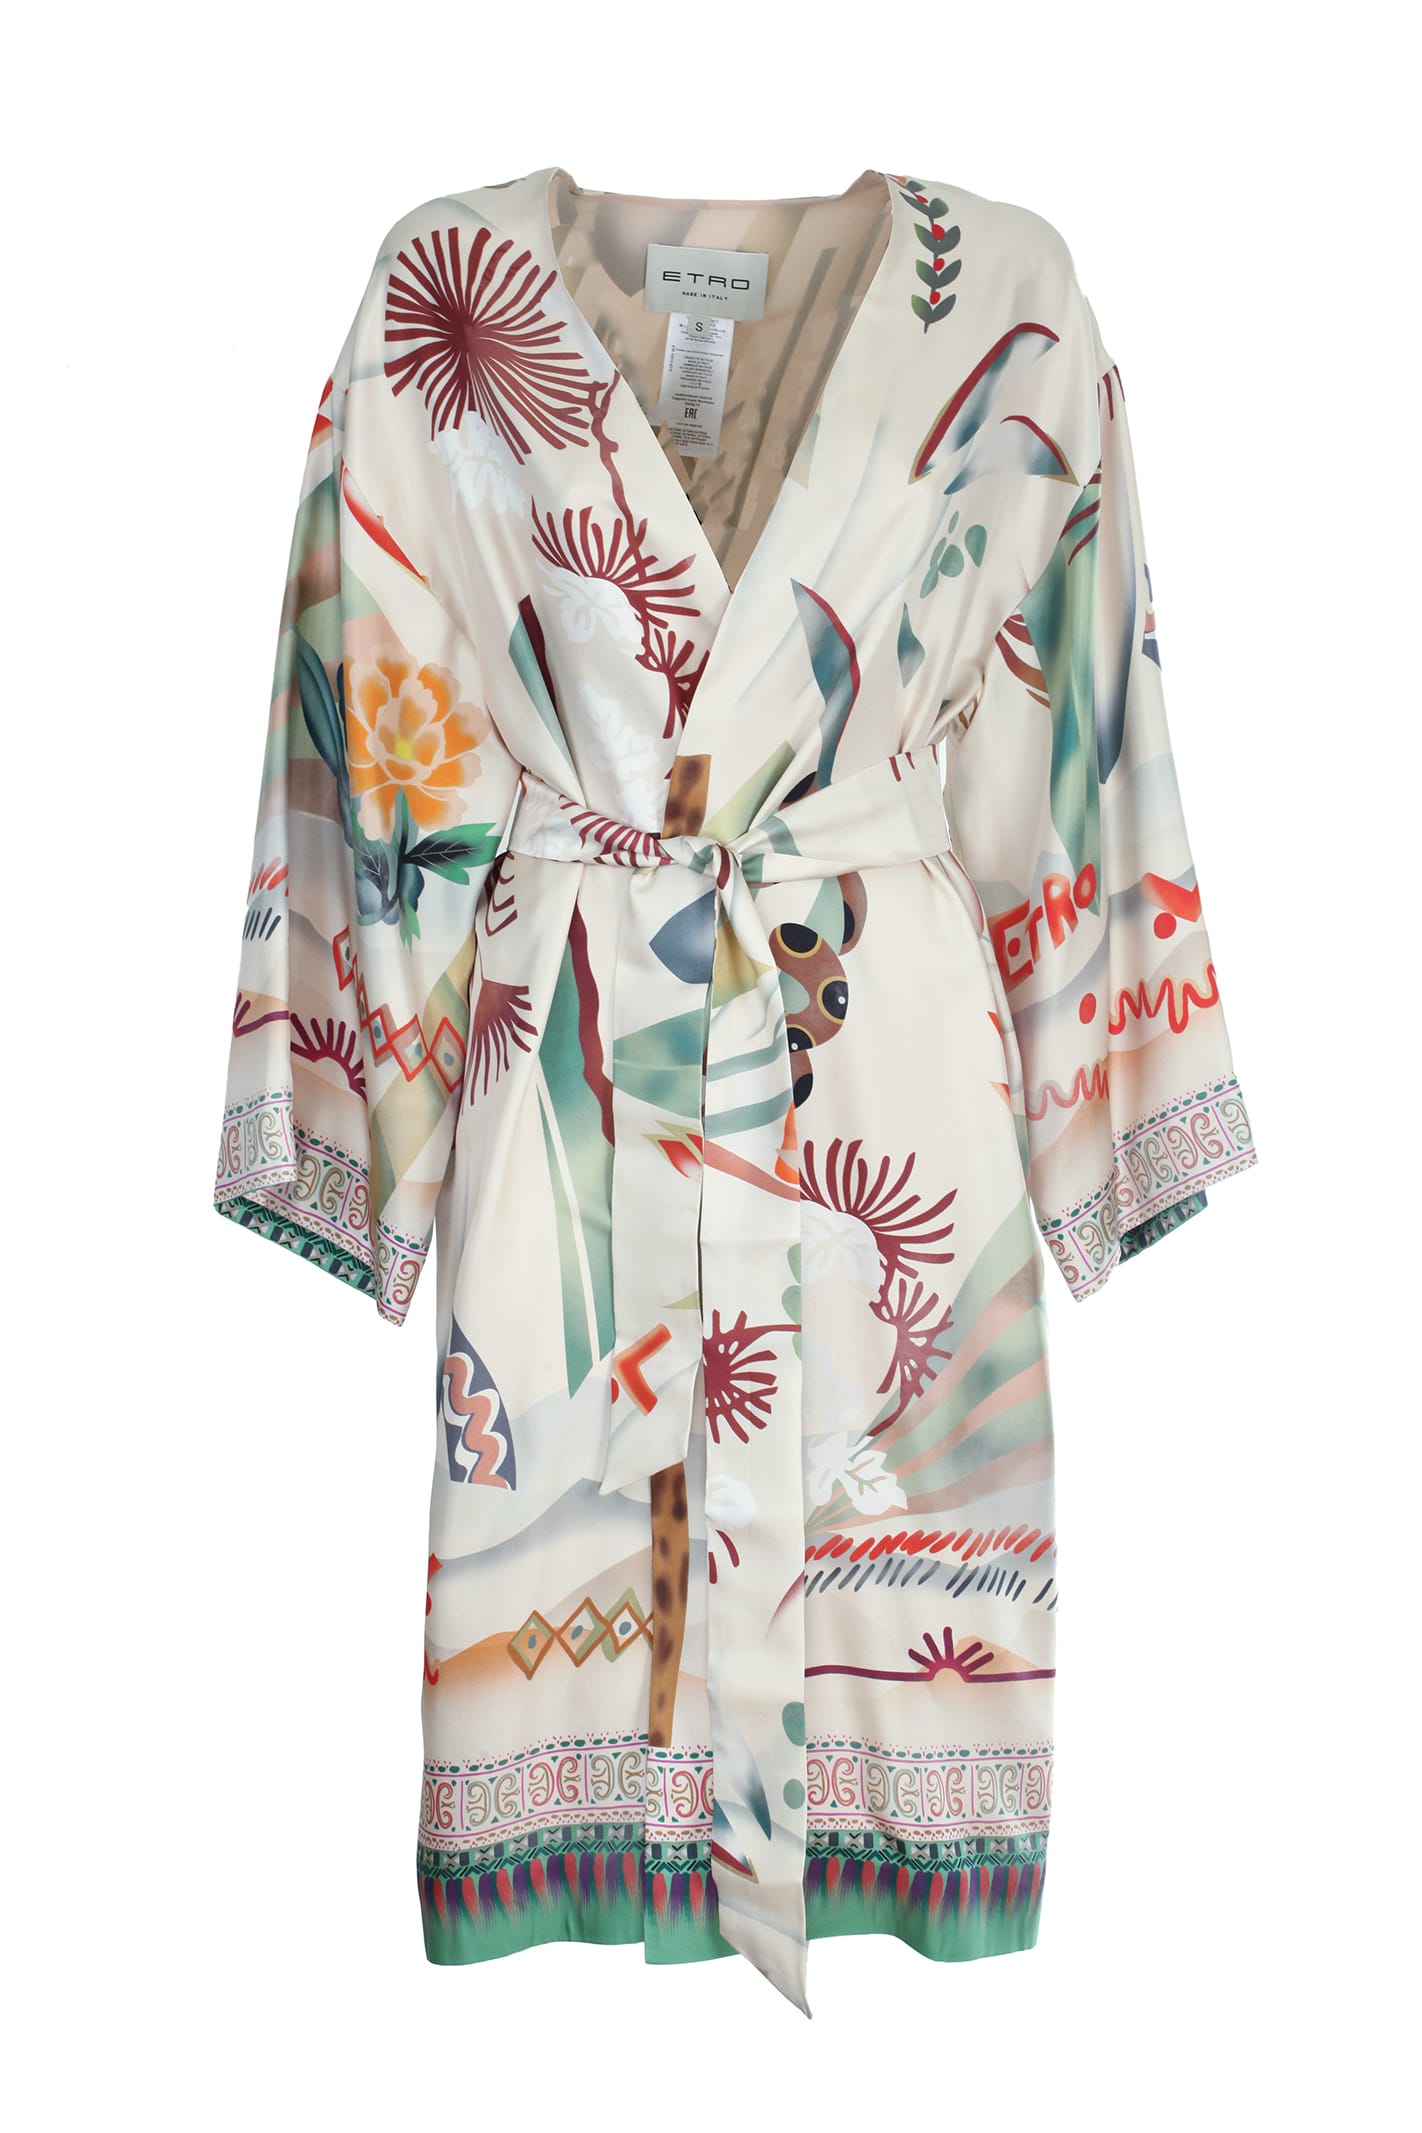 Etro kimono-style duster